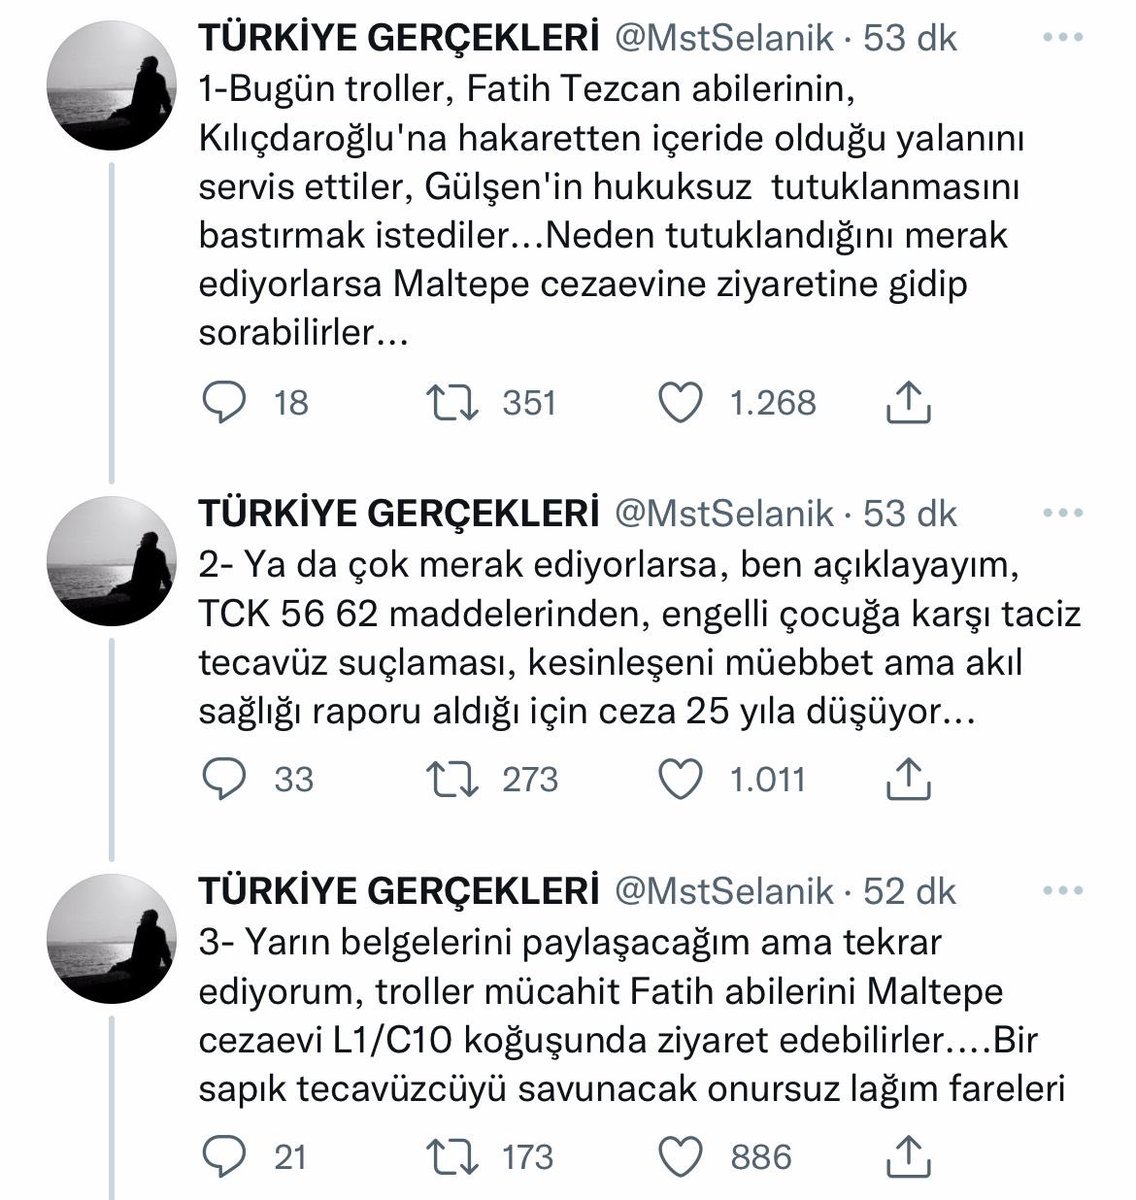 TCK 56 ve 62 taciz tecavüzle ilgili değilken, DHKP-C’li Mustafa Selanik ve her örgütle bir şekilde yatağa giren Gökhan Özbek’in sitesi Fatih Tezcan’a alenen iftira atıyor.